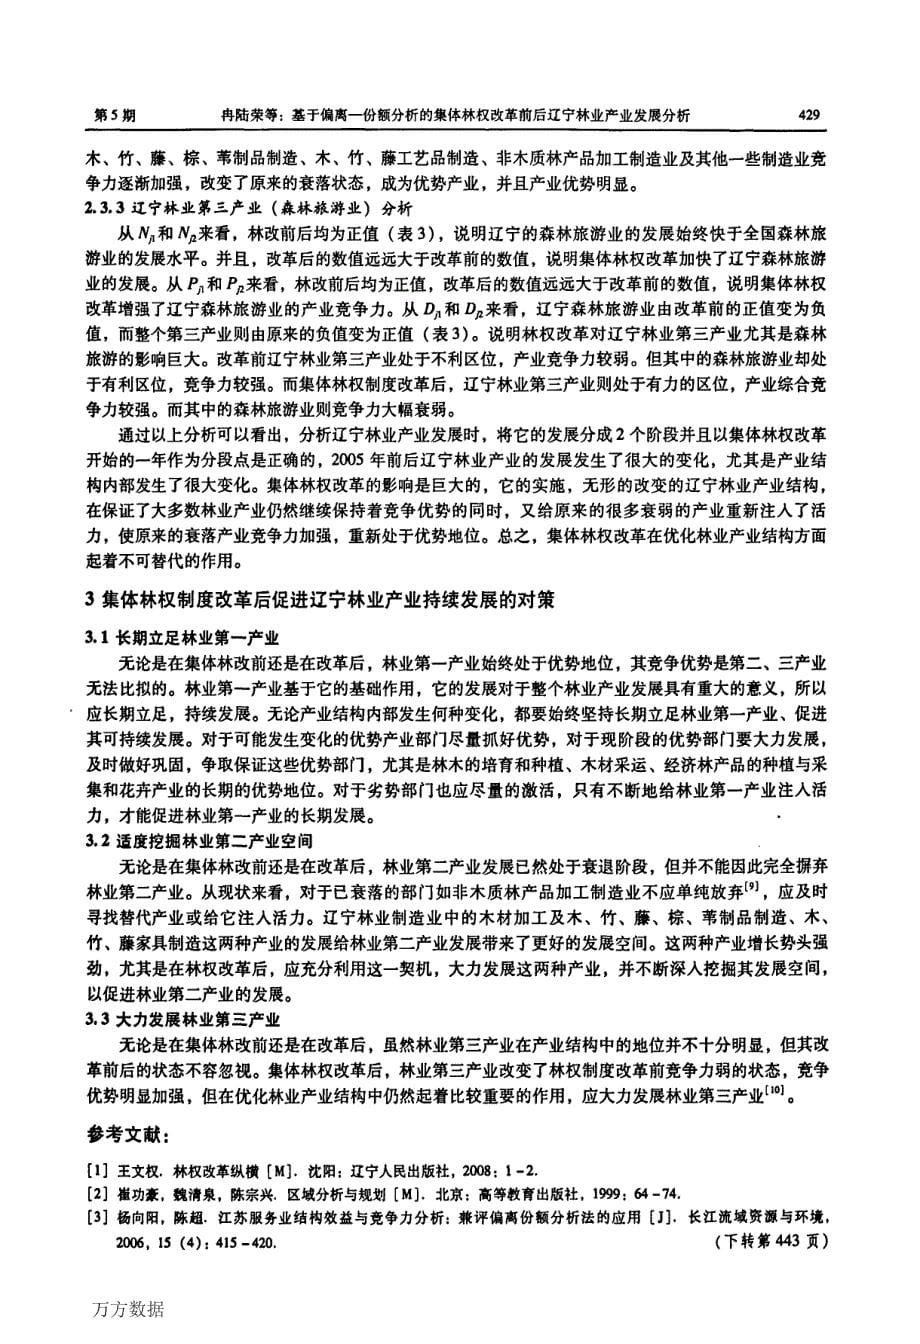 基于偏离份额分析的集体林权改革前后辽宁林业产业发展分析_第5页